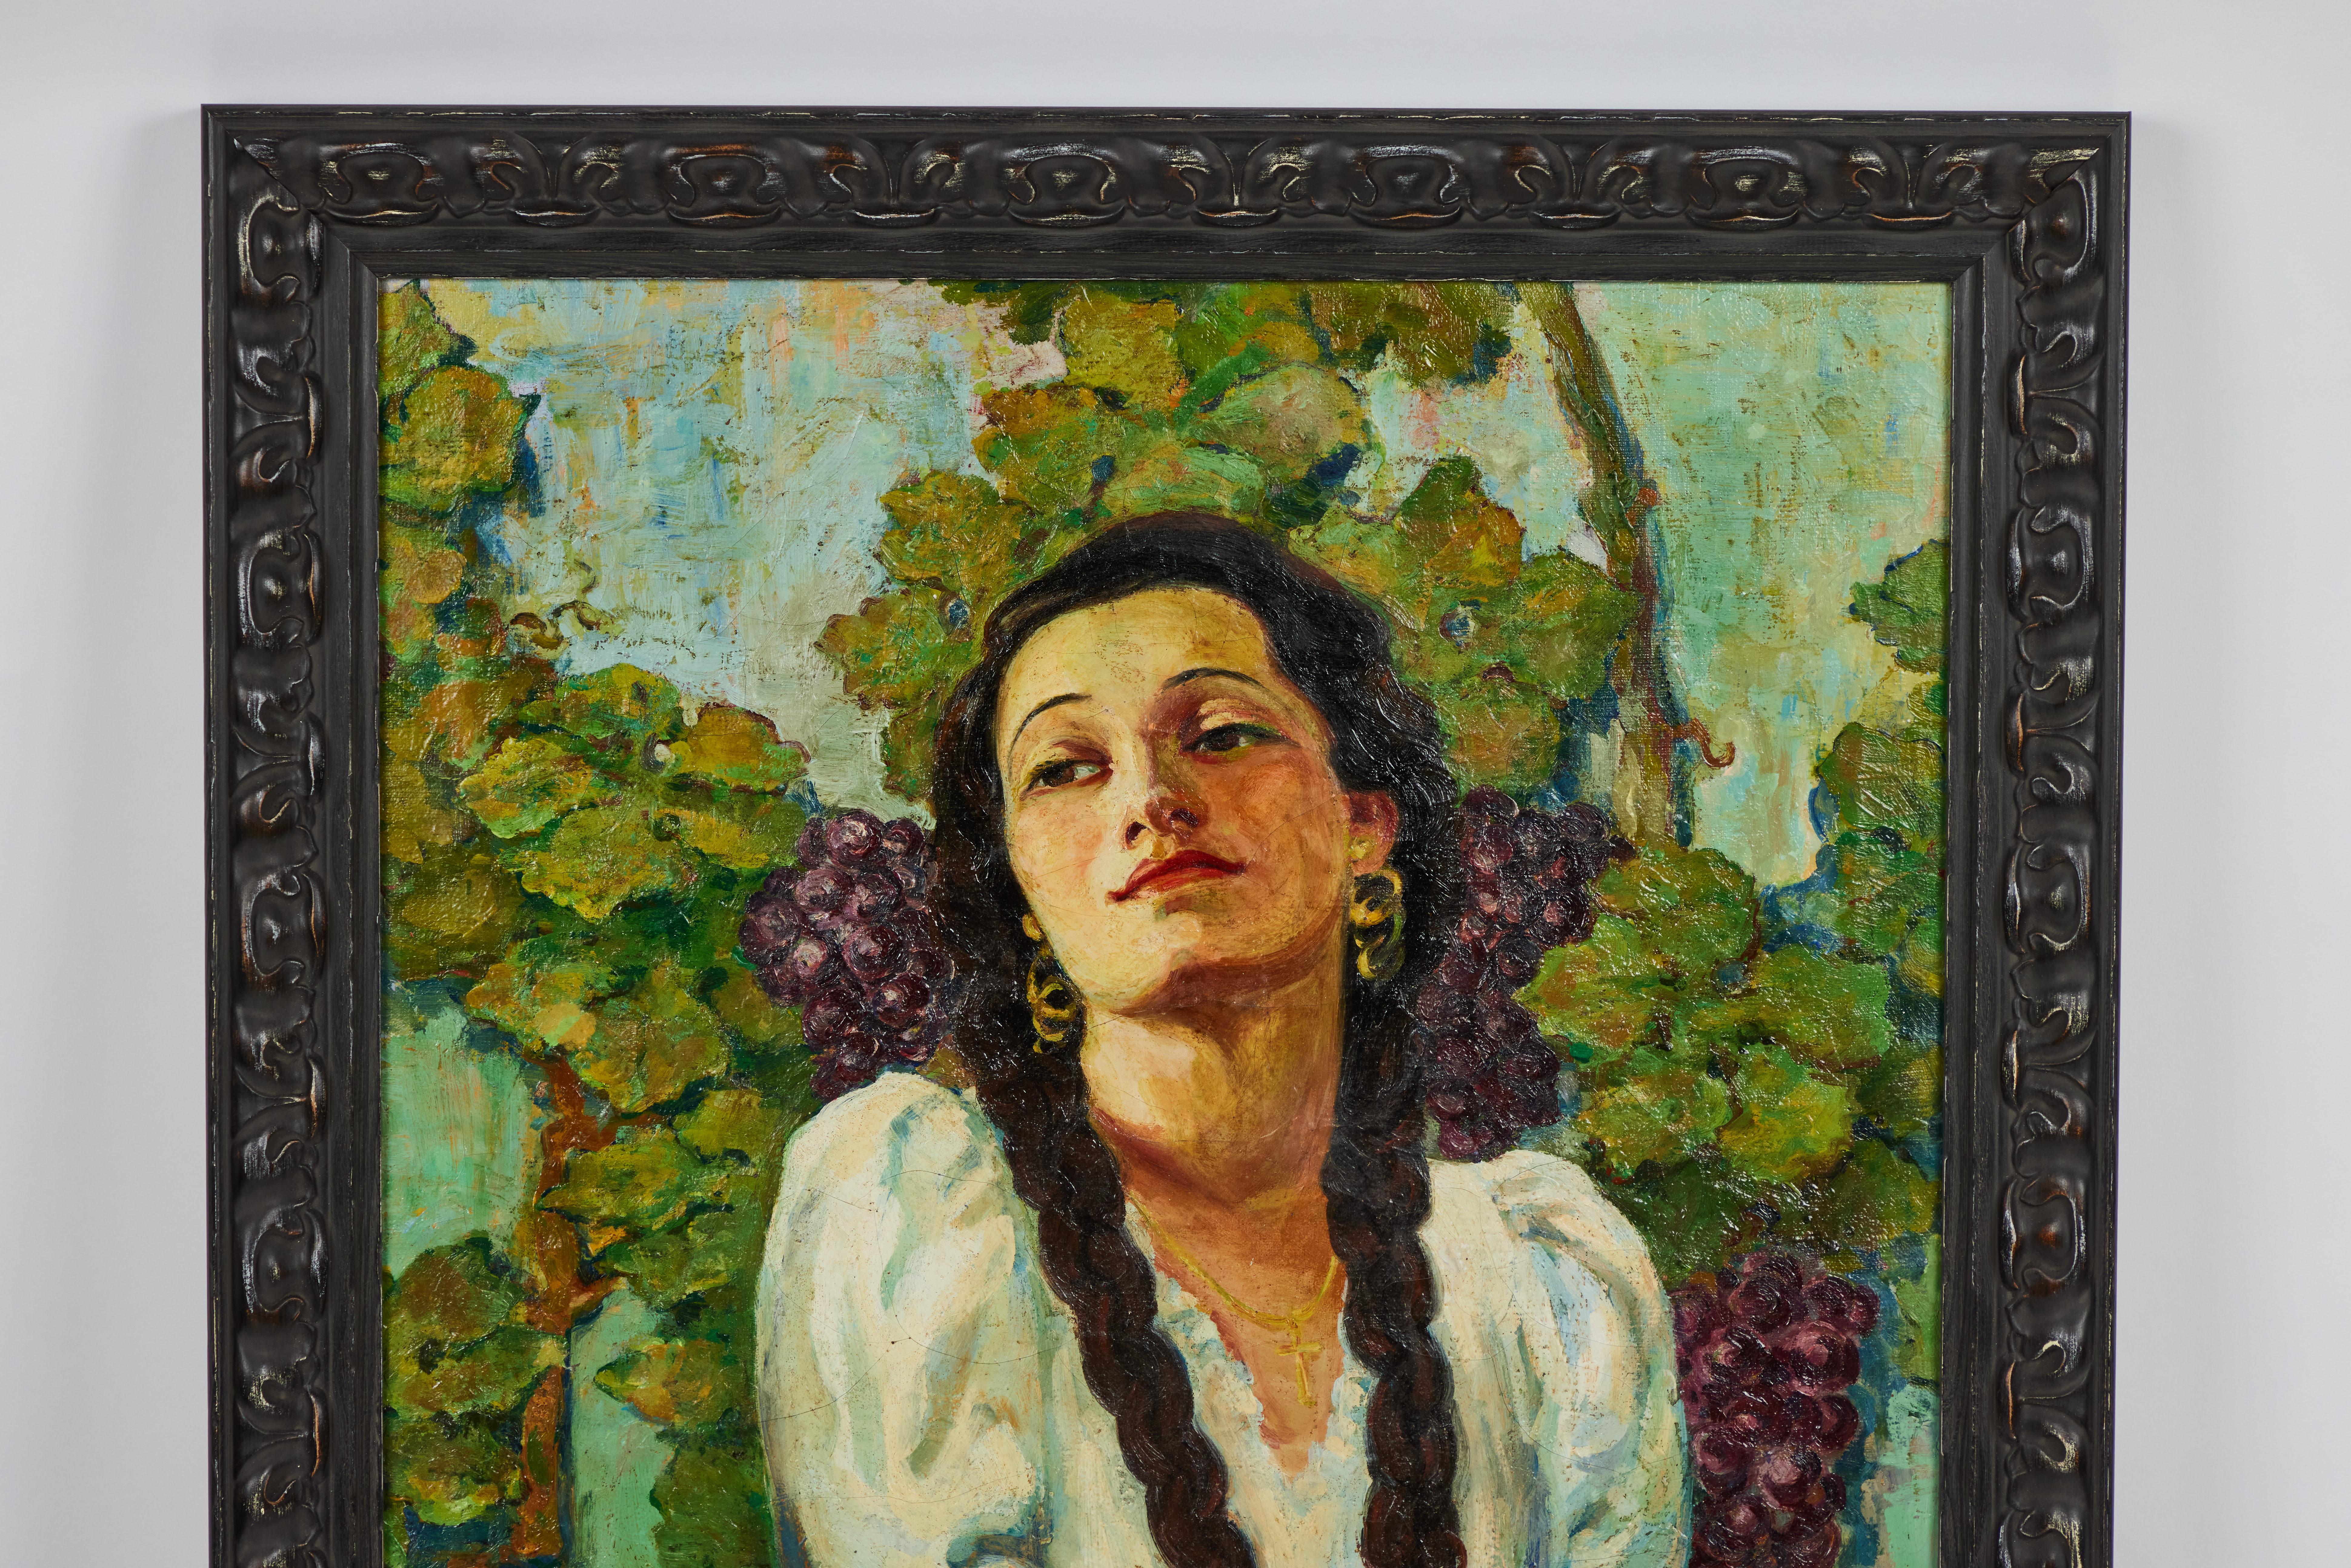 Peinture à l'huile des années 1930 représentant une femme avec des tresses devant des vignes. Signé par l'artiste.

La peinture a été nettoyée, a fait l'objet de réparations mineures et est encadrée depuis peu.